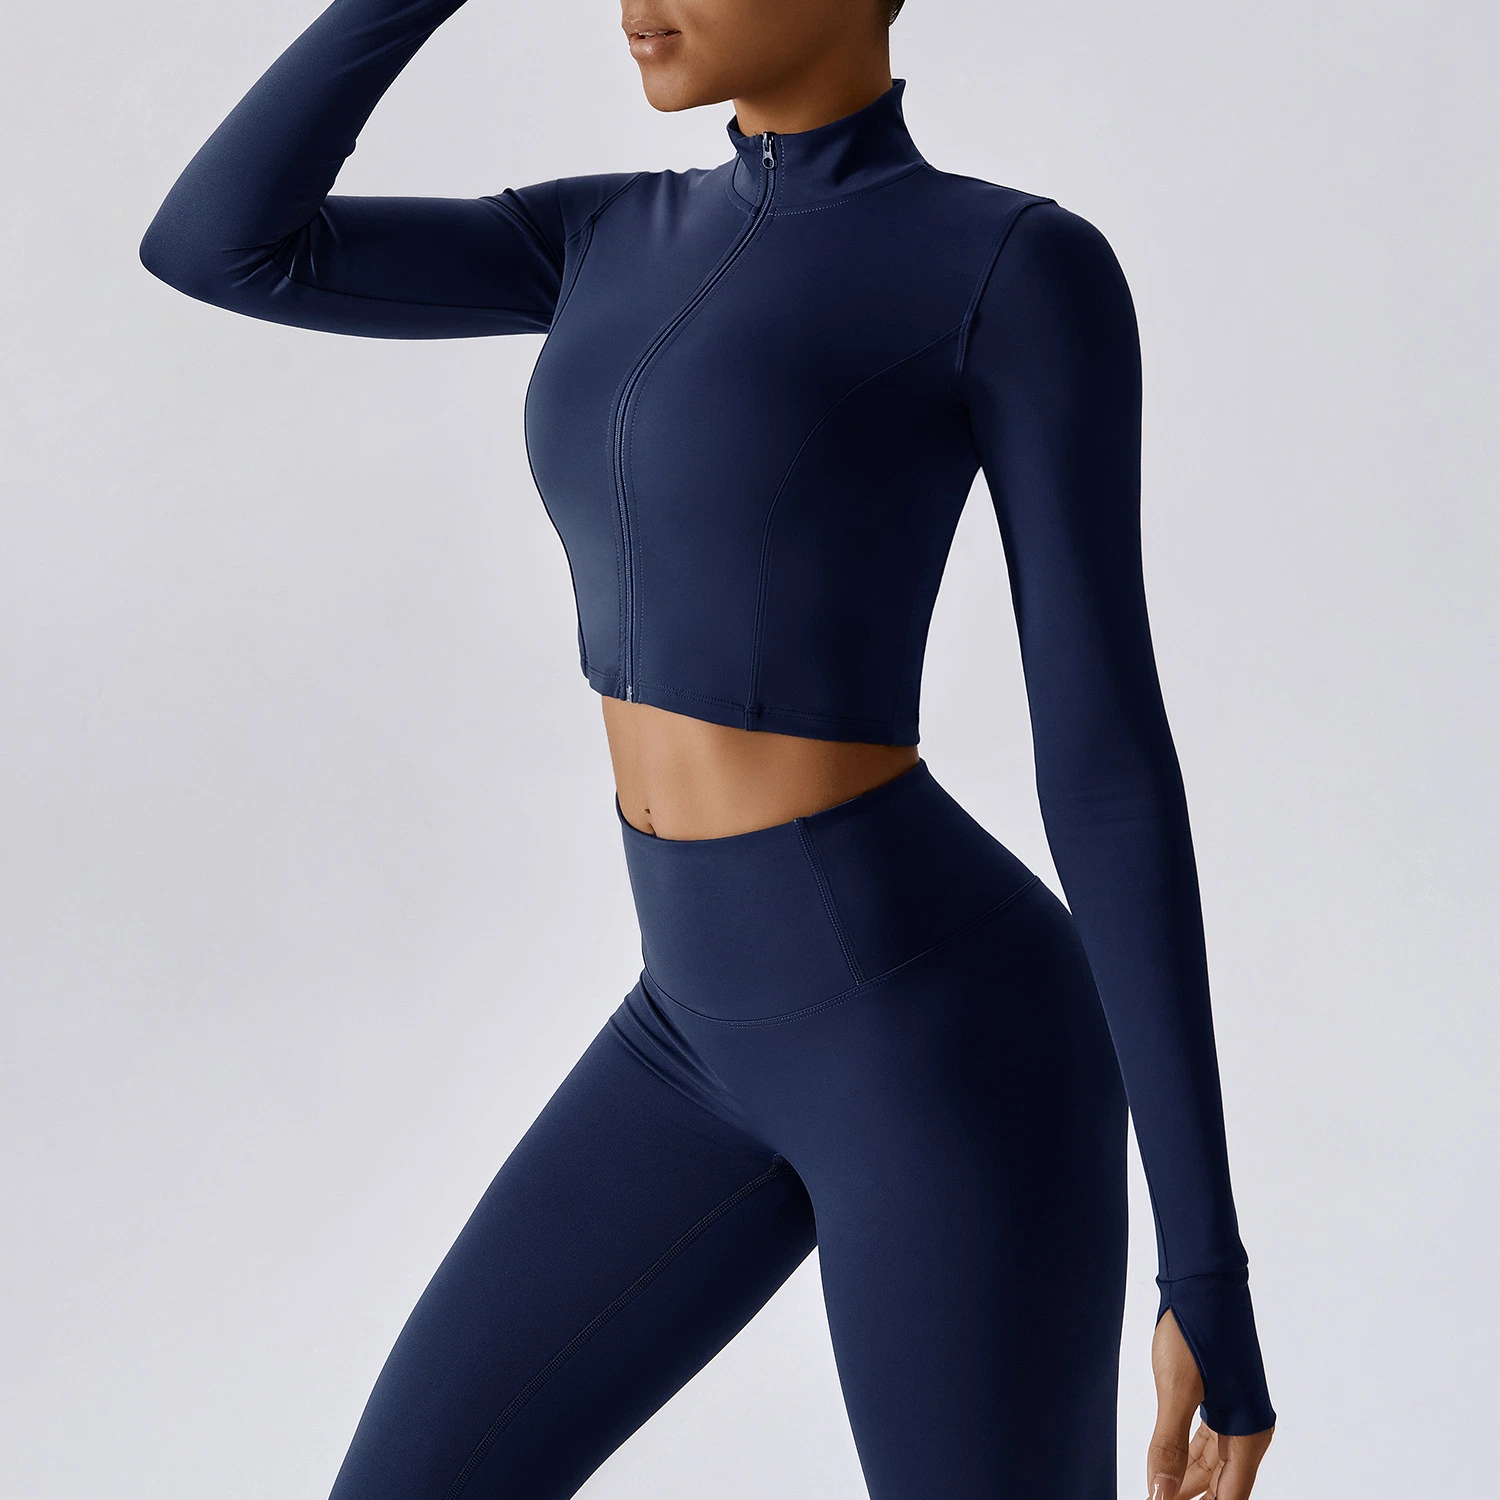 Zippe Sports Slim Gym Long Sleeve Women Quick-Dry Yoga Wear Jacket Sportswear